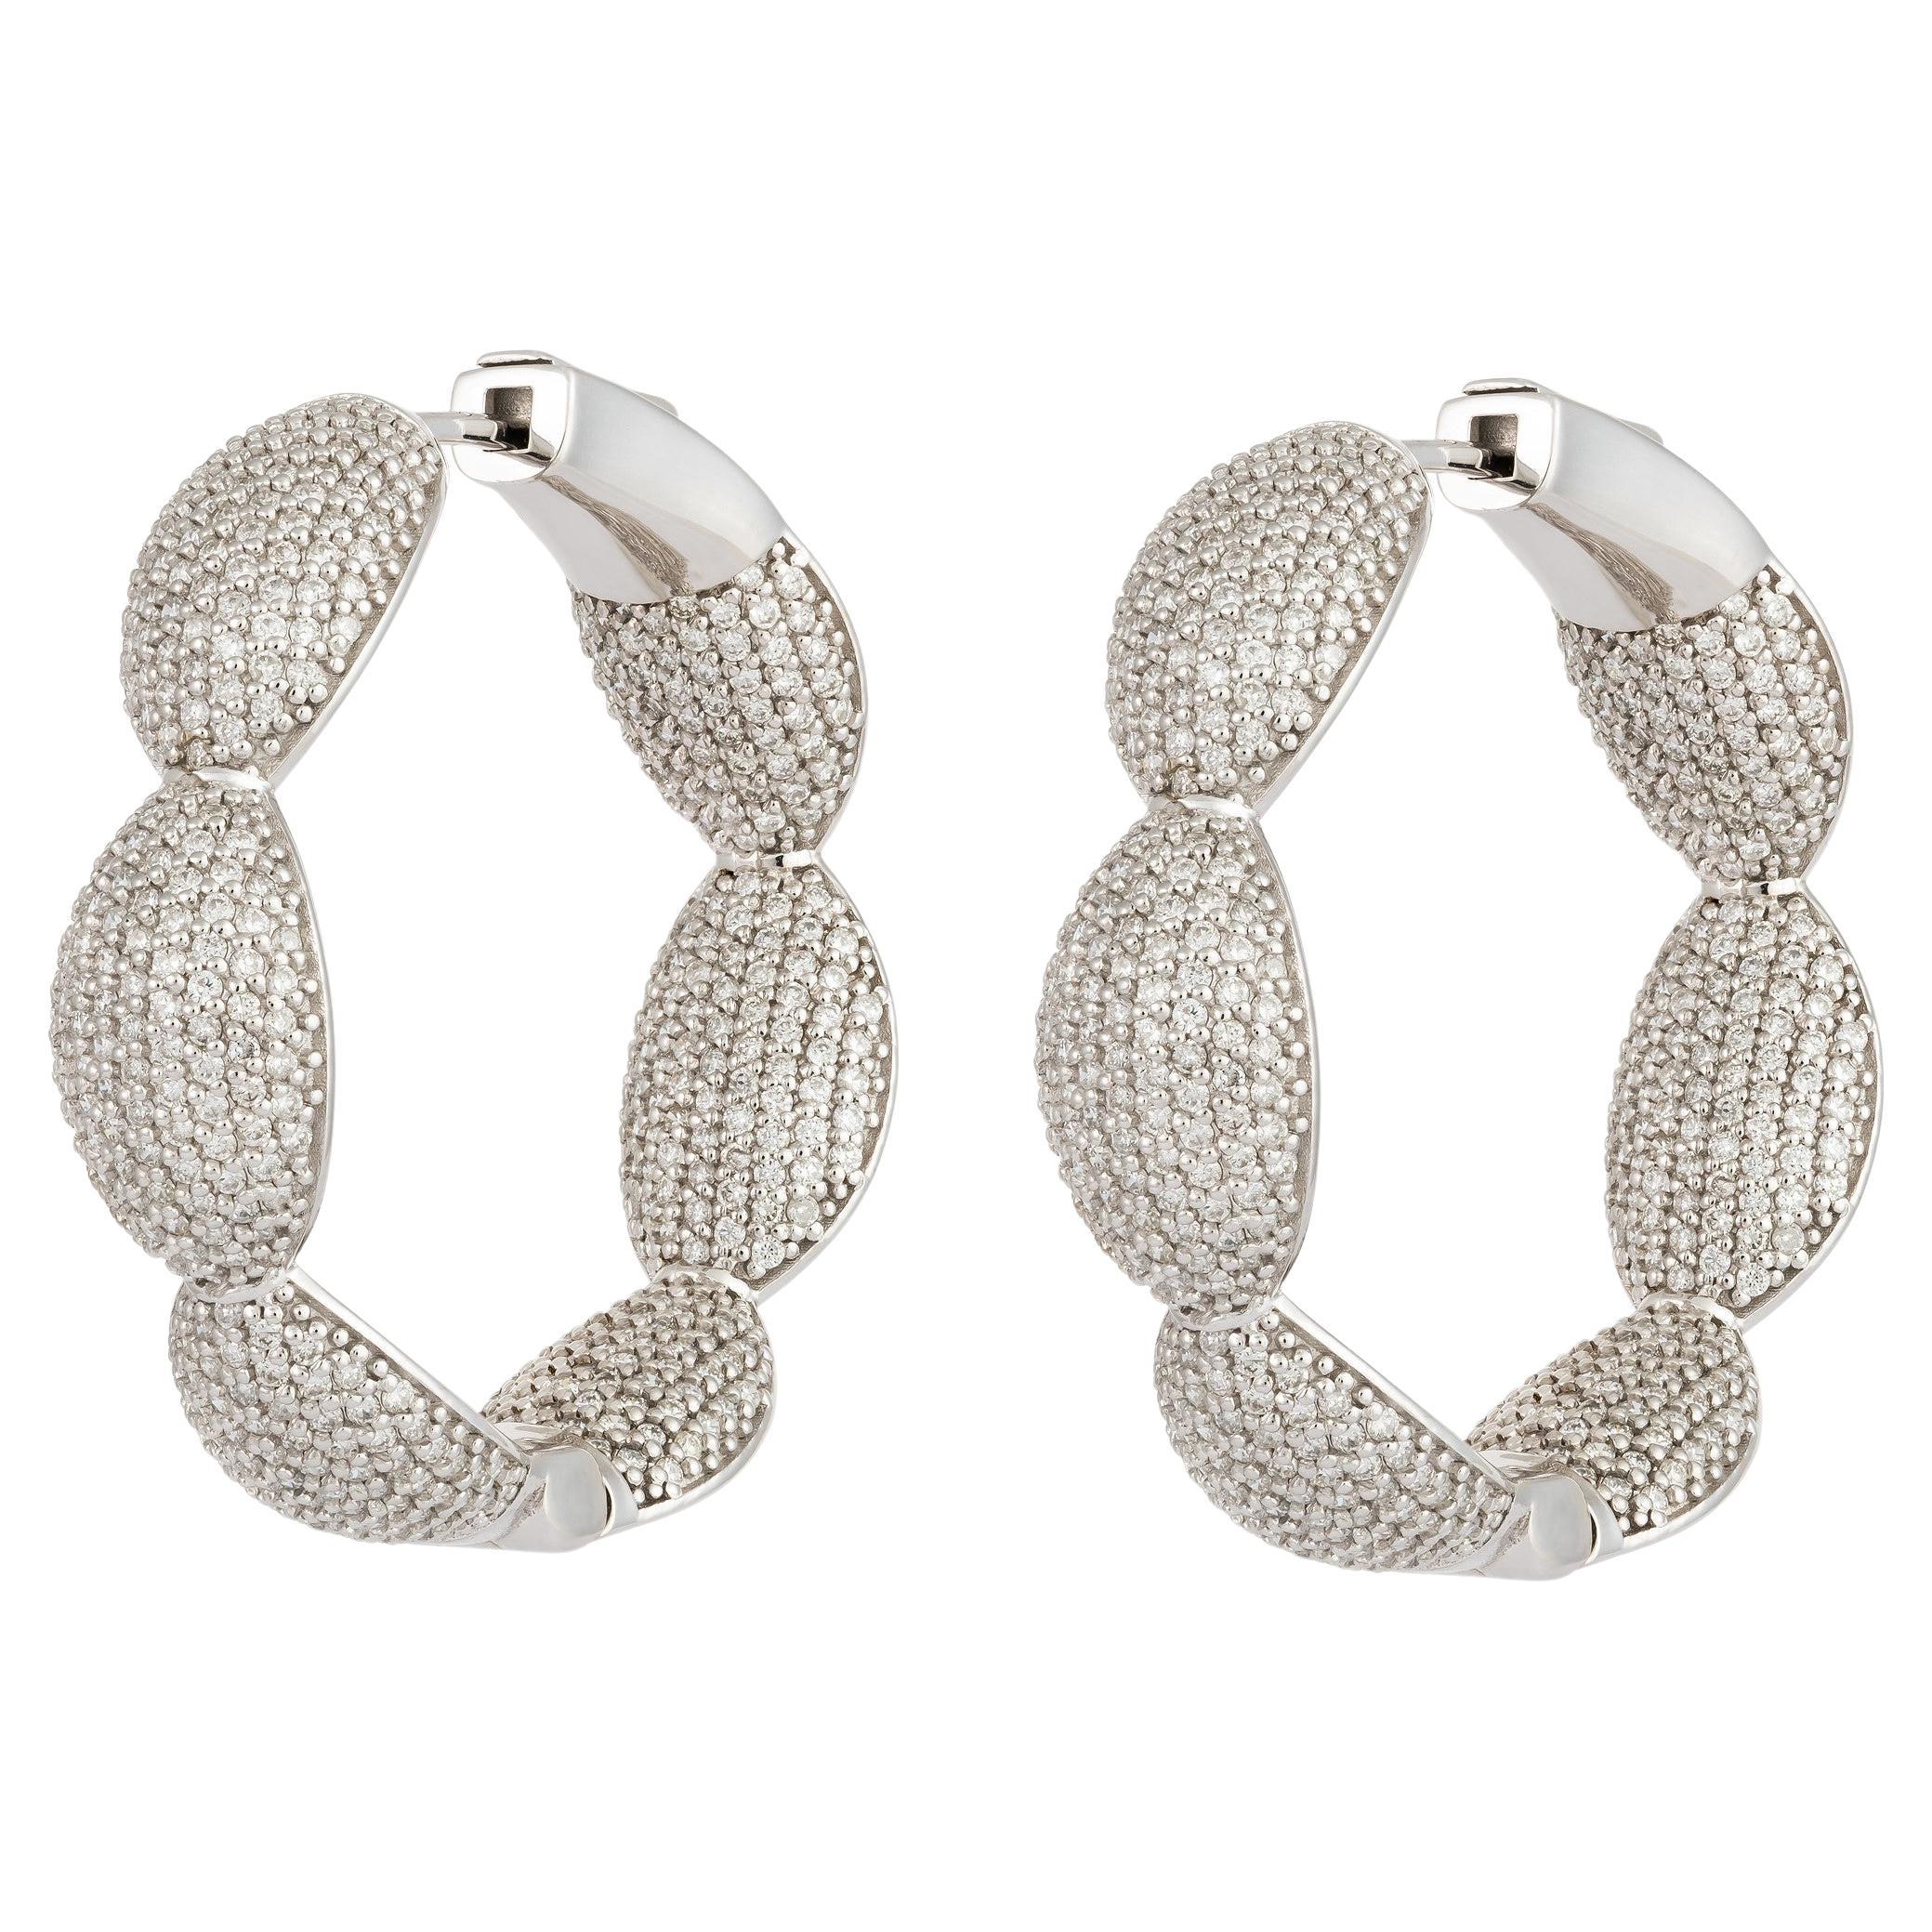 NWT $25, 000 18KT or blanc Fancy Large Glittering Fancy Diamond Hoop Earrings (boucles d'oreilles en or blanc 18KT)